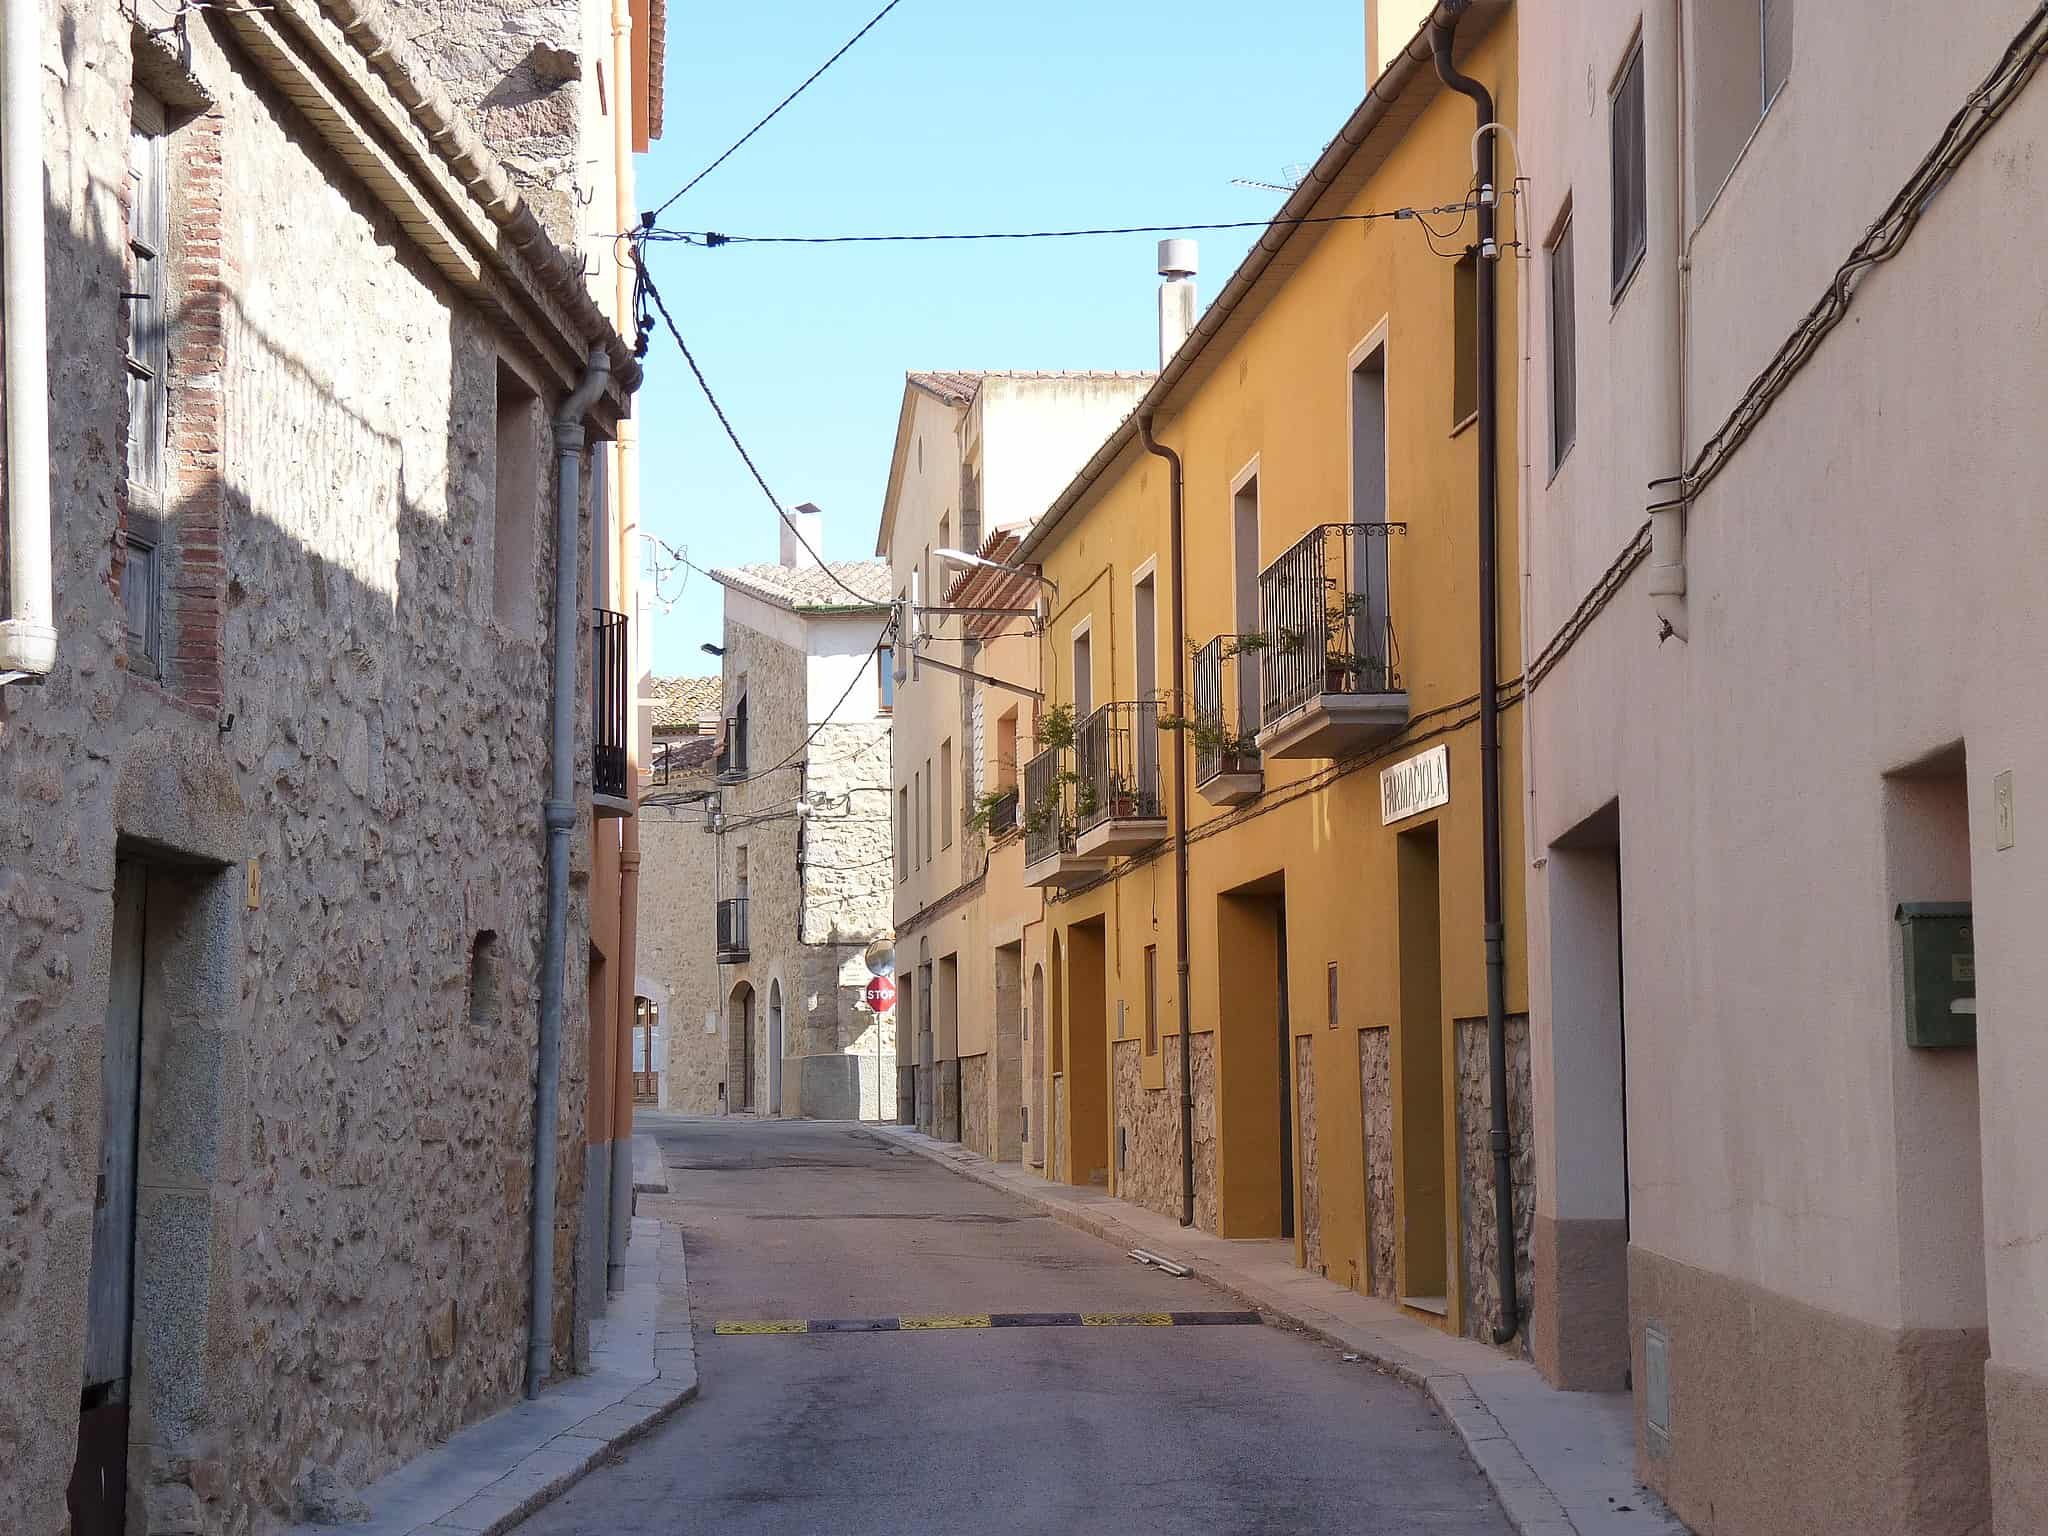 Bygninger i landsbyen Capmany, Girona-provinsen i Spania